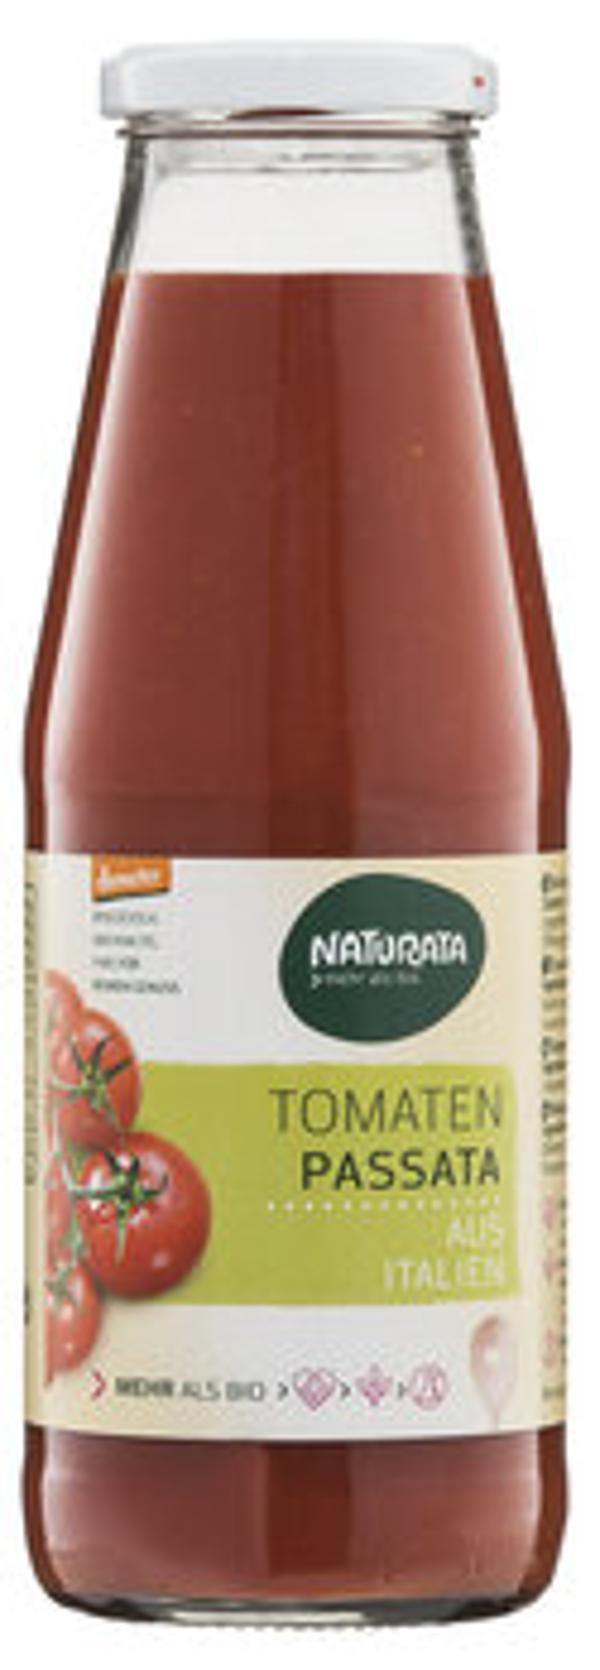 Produktfoto zu Tomaten Passata 700g